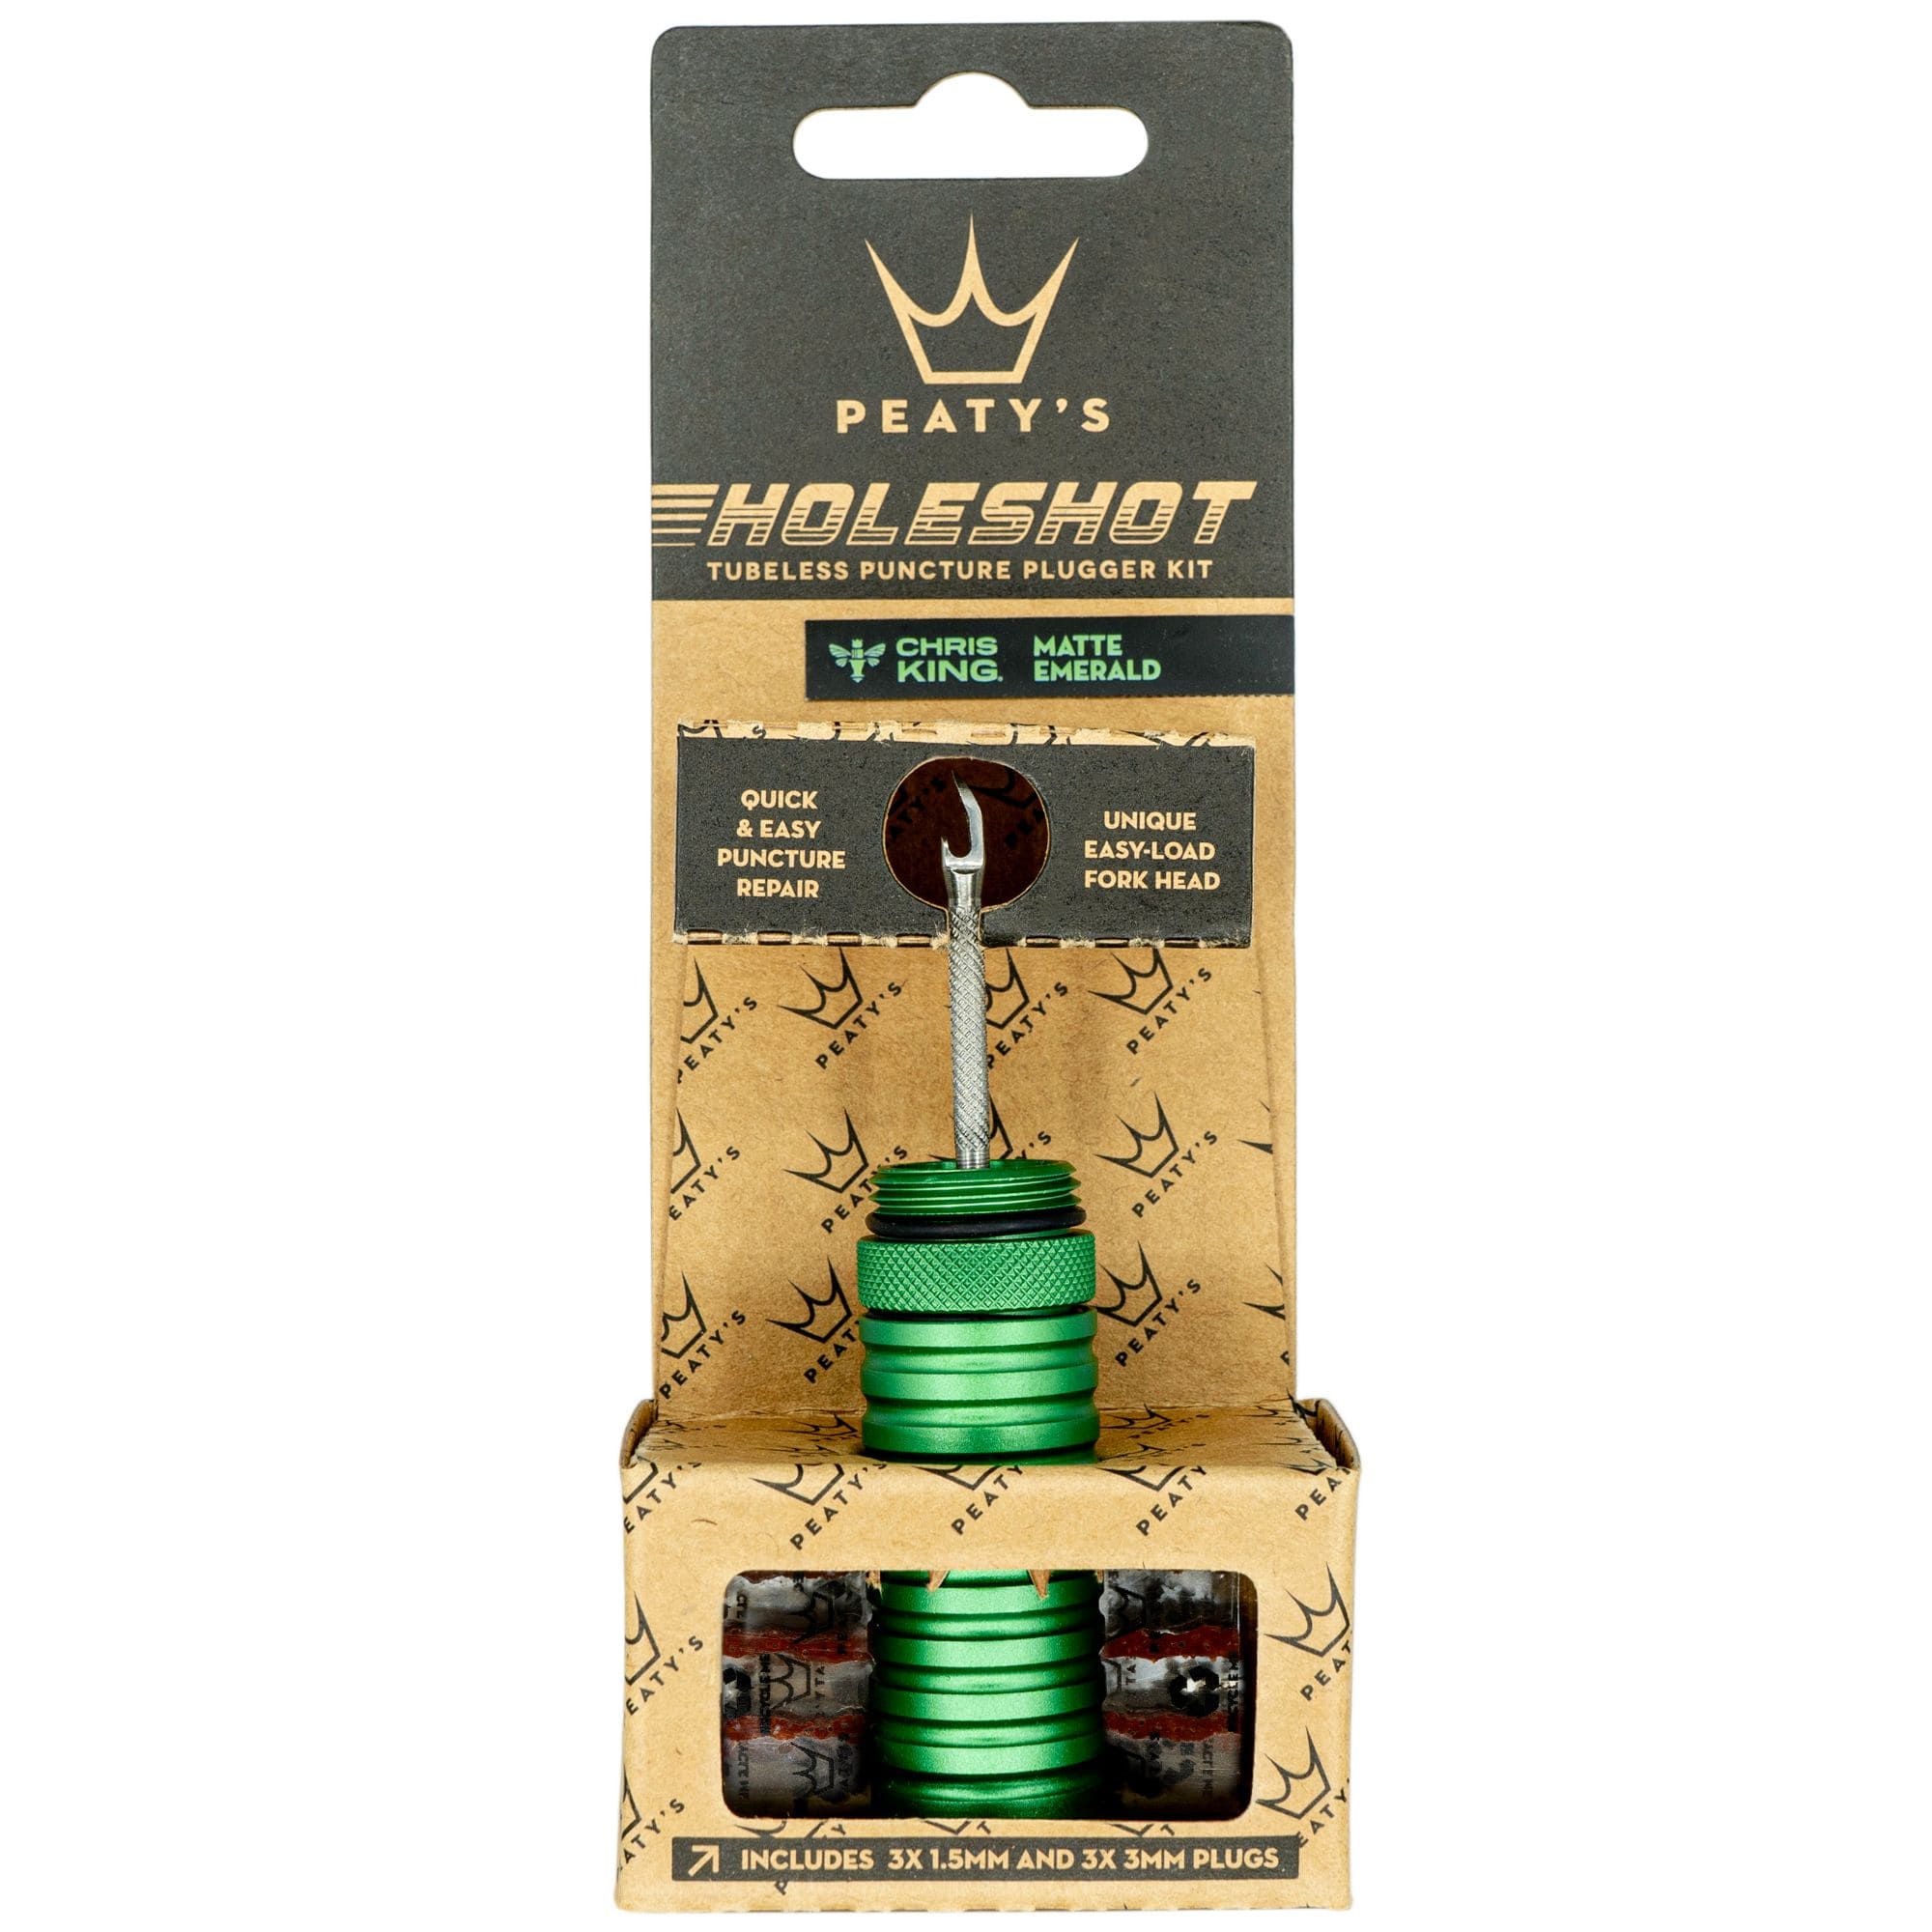 Peaty's Holeshot Tubeless Puncture Plugger Kit Emerald